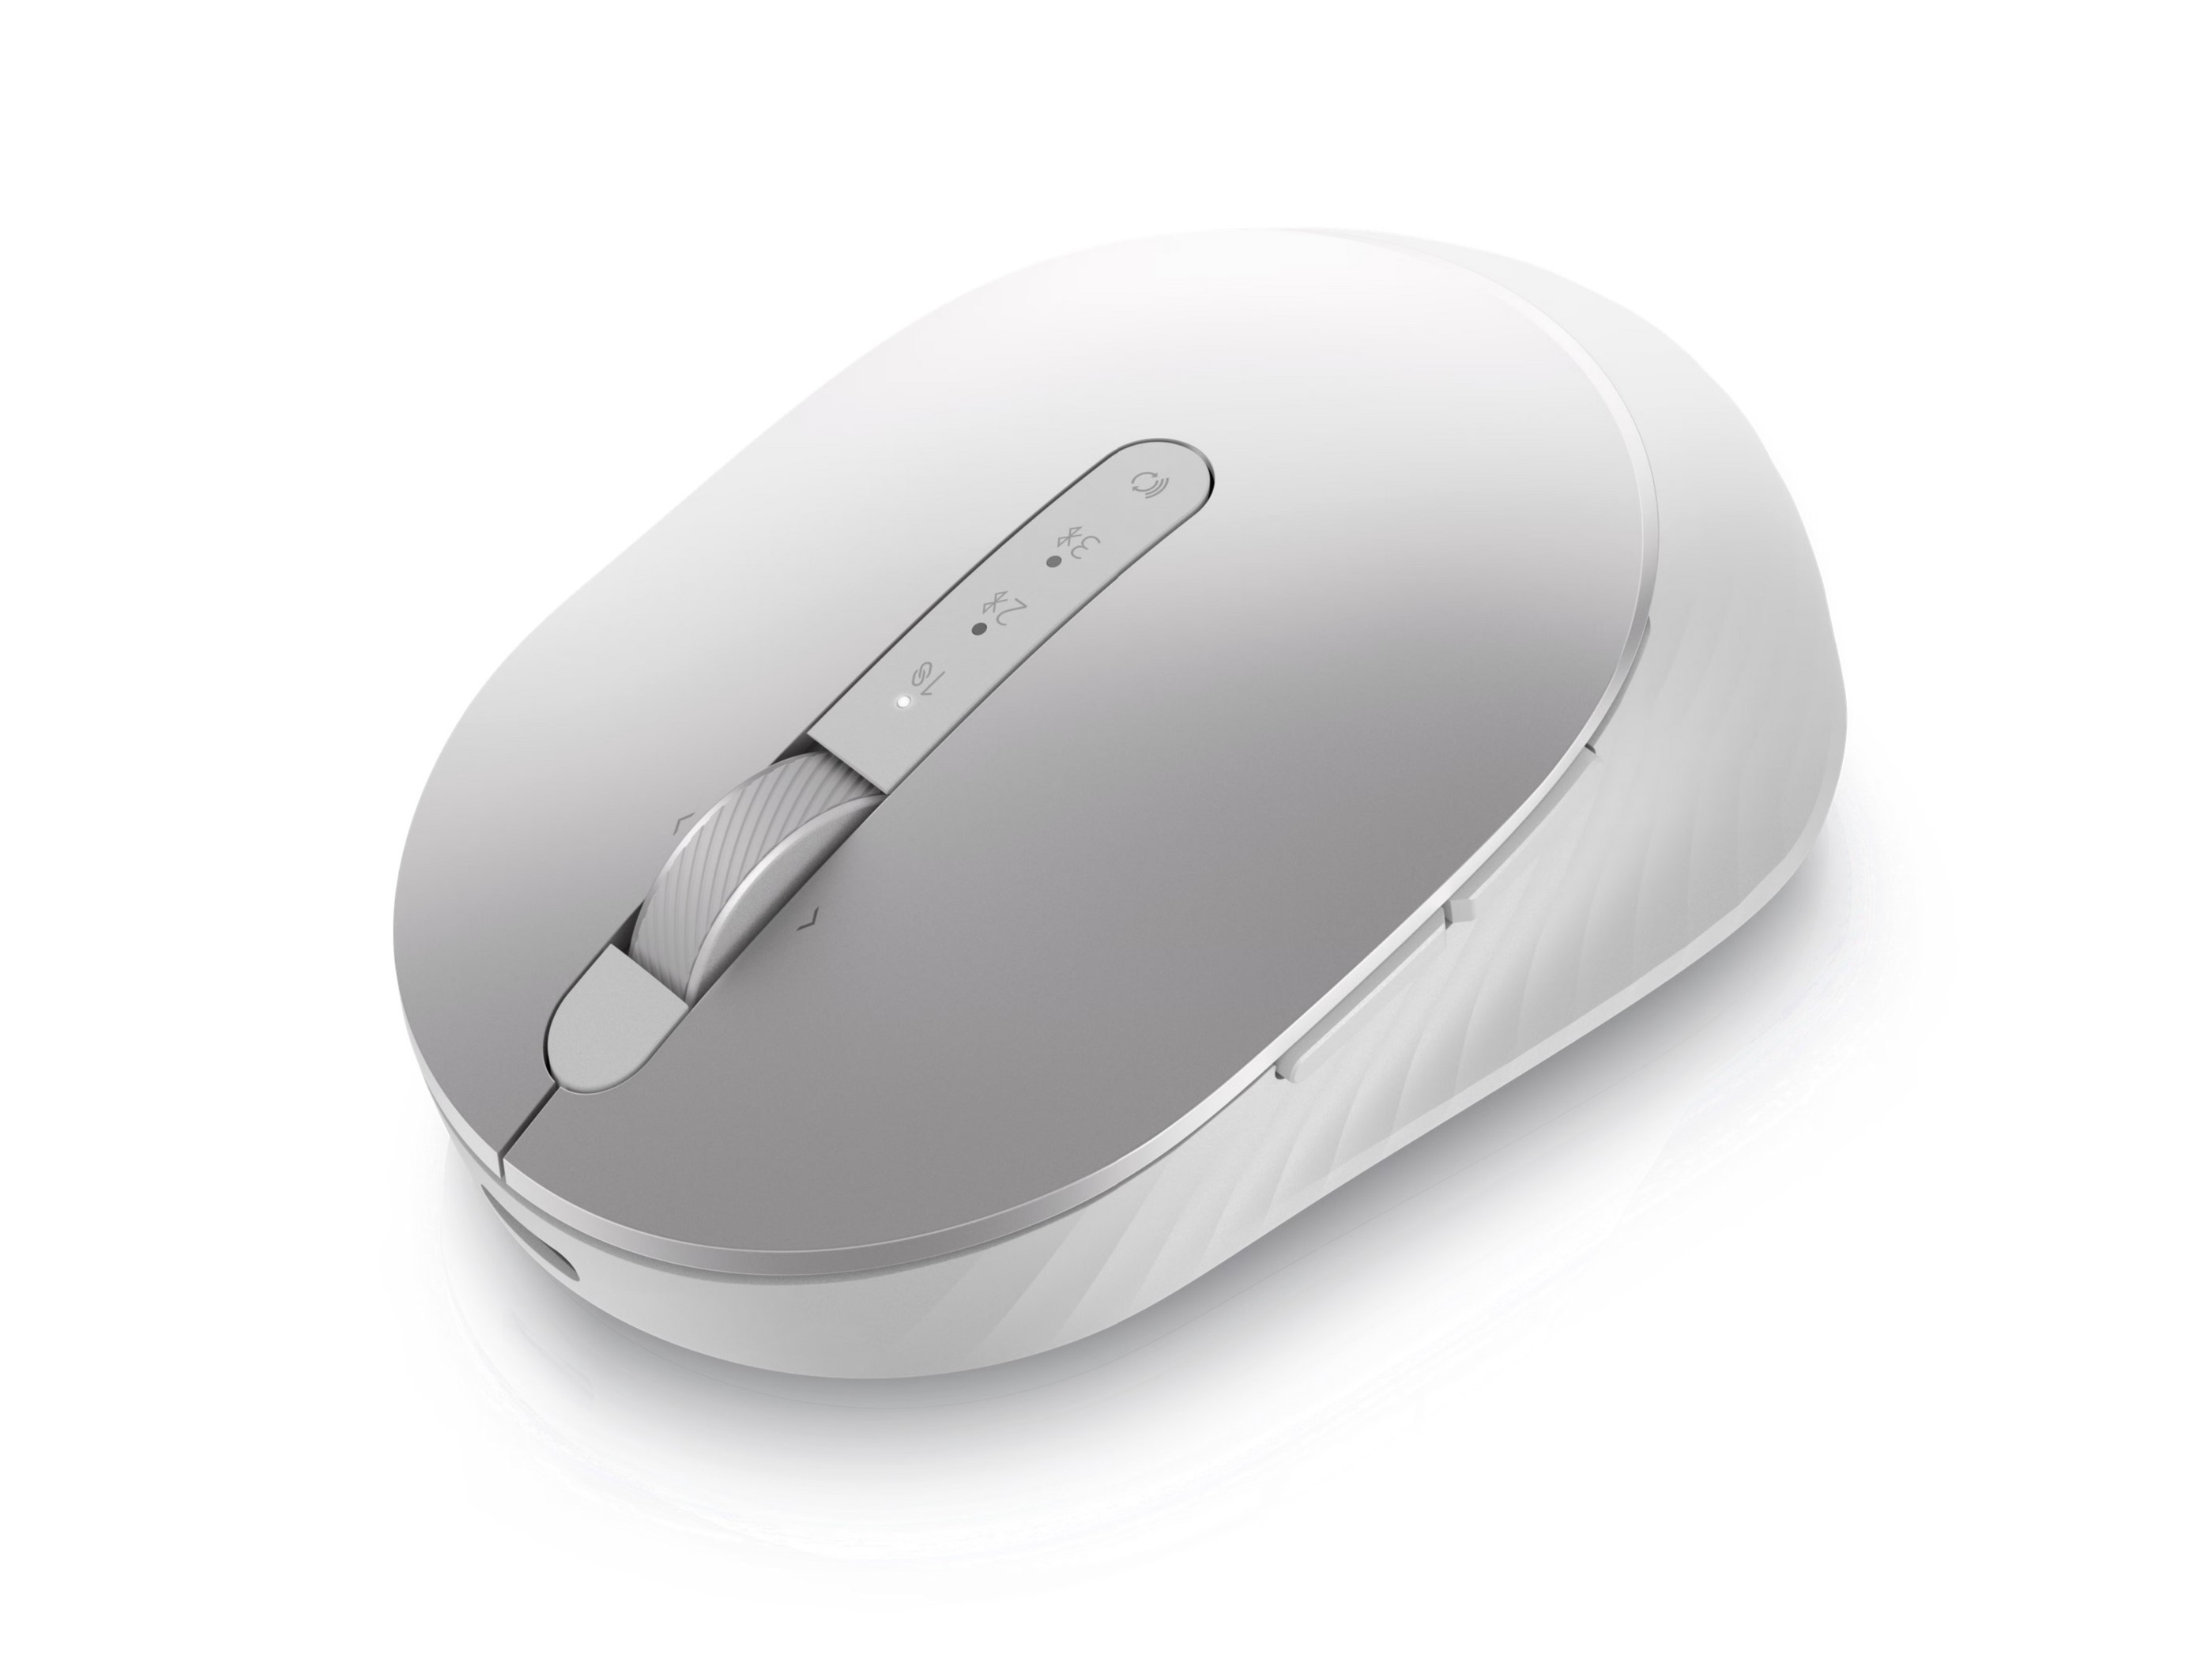 Imagem do produto do mouse sem fio recarregável Dell Premier MS7421W.